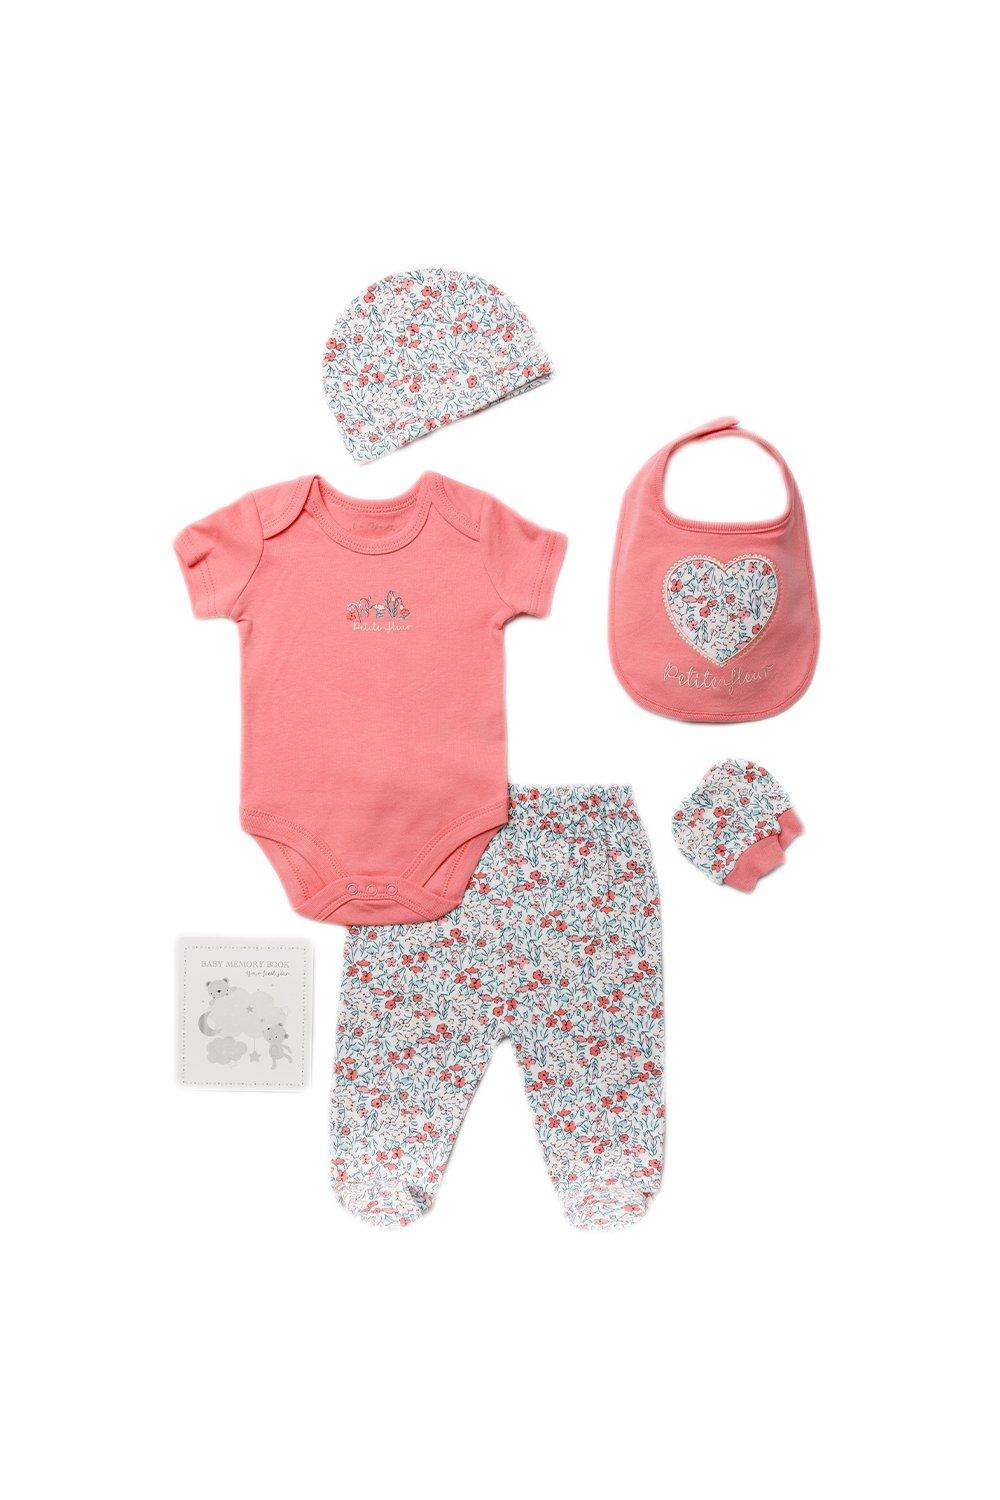 Хлопковый подарочный набор из 6 предметов с цветочным принтом для ребенка Rock a Bye Baby, розовый серый комплект пододеяльников с цветочным сердечком homestore белый